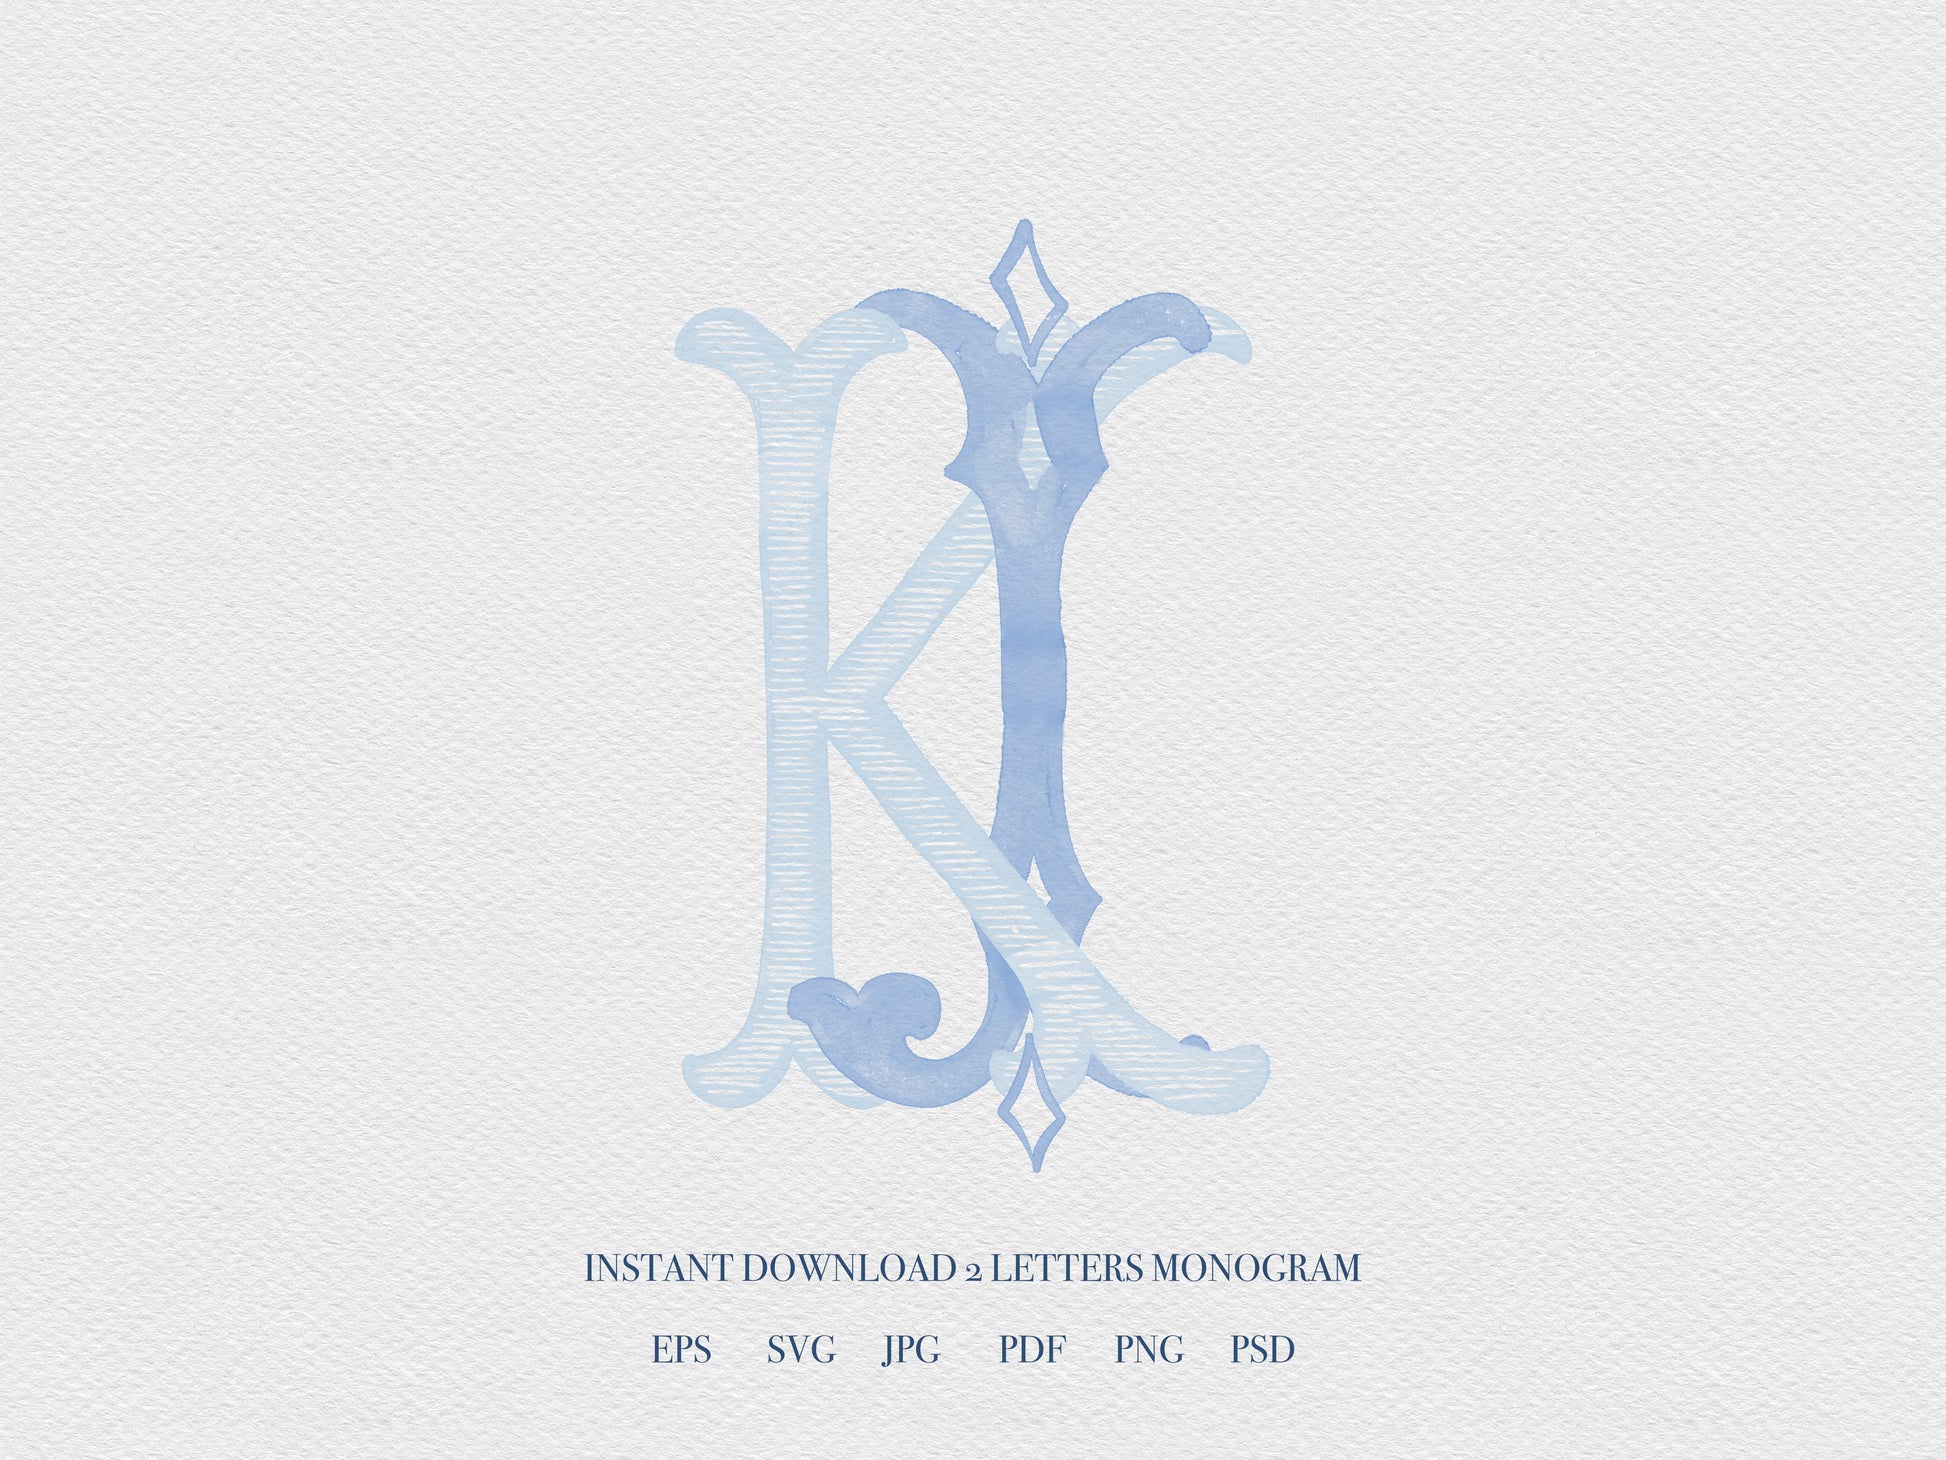 2 Letter Monogram with Letters JK KJ | Digital Download - Wedding Monogram SVG, Personal Logo, Wedding Logo for Wedding Invitations The Wedding Crest Lab